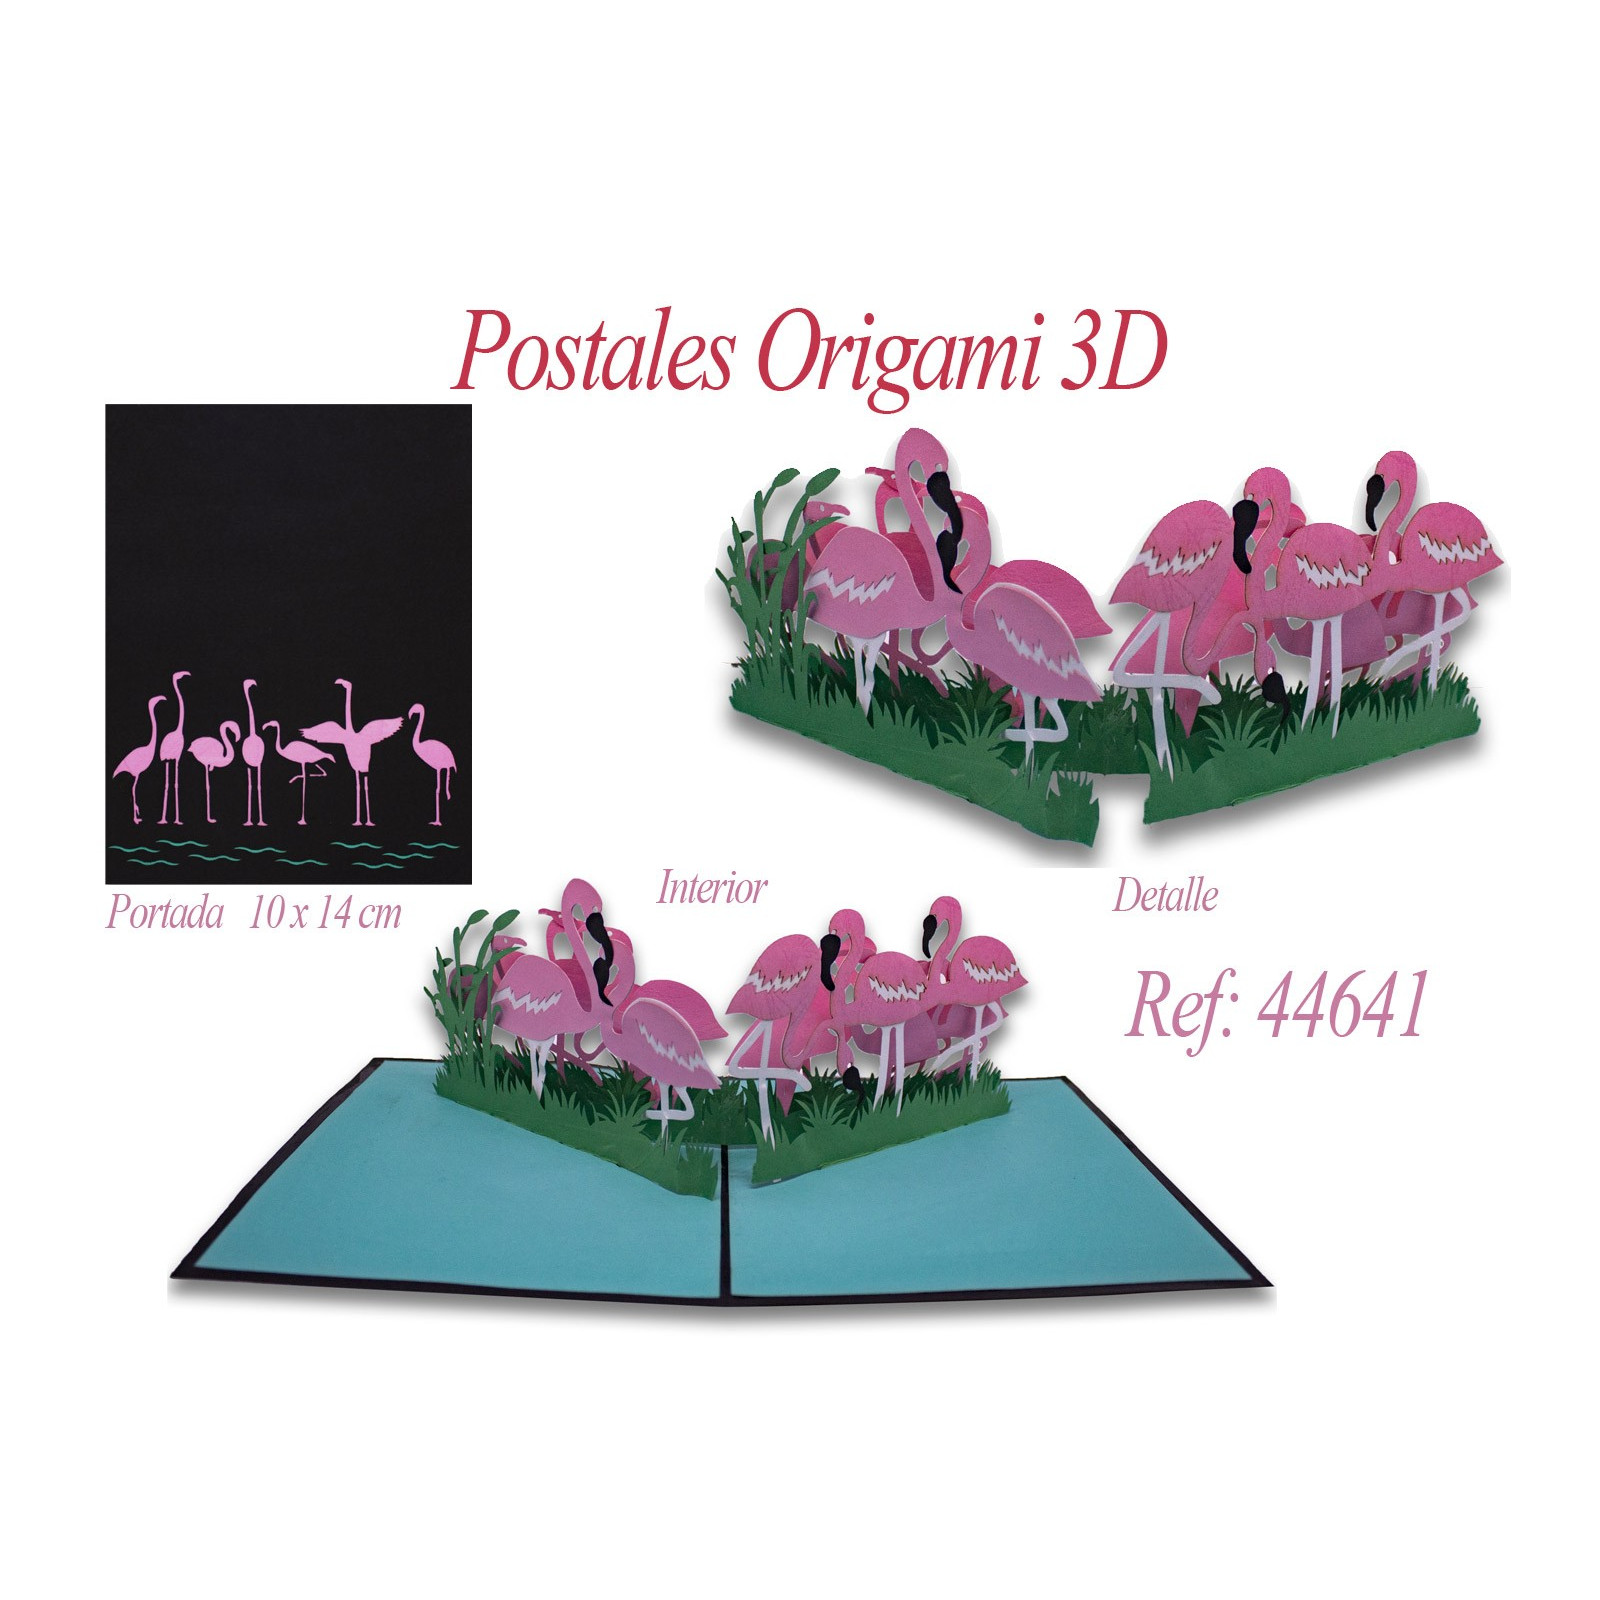 Cartão postal de flamingos de origami 3d